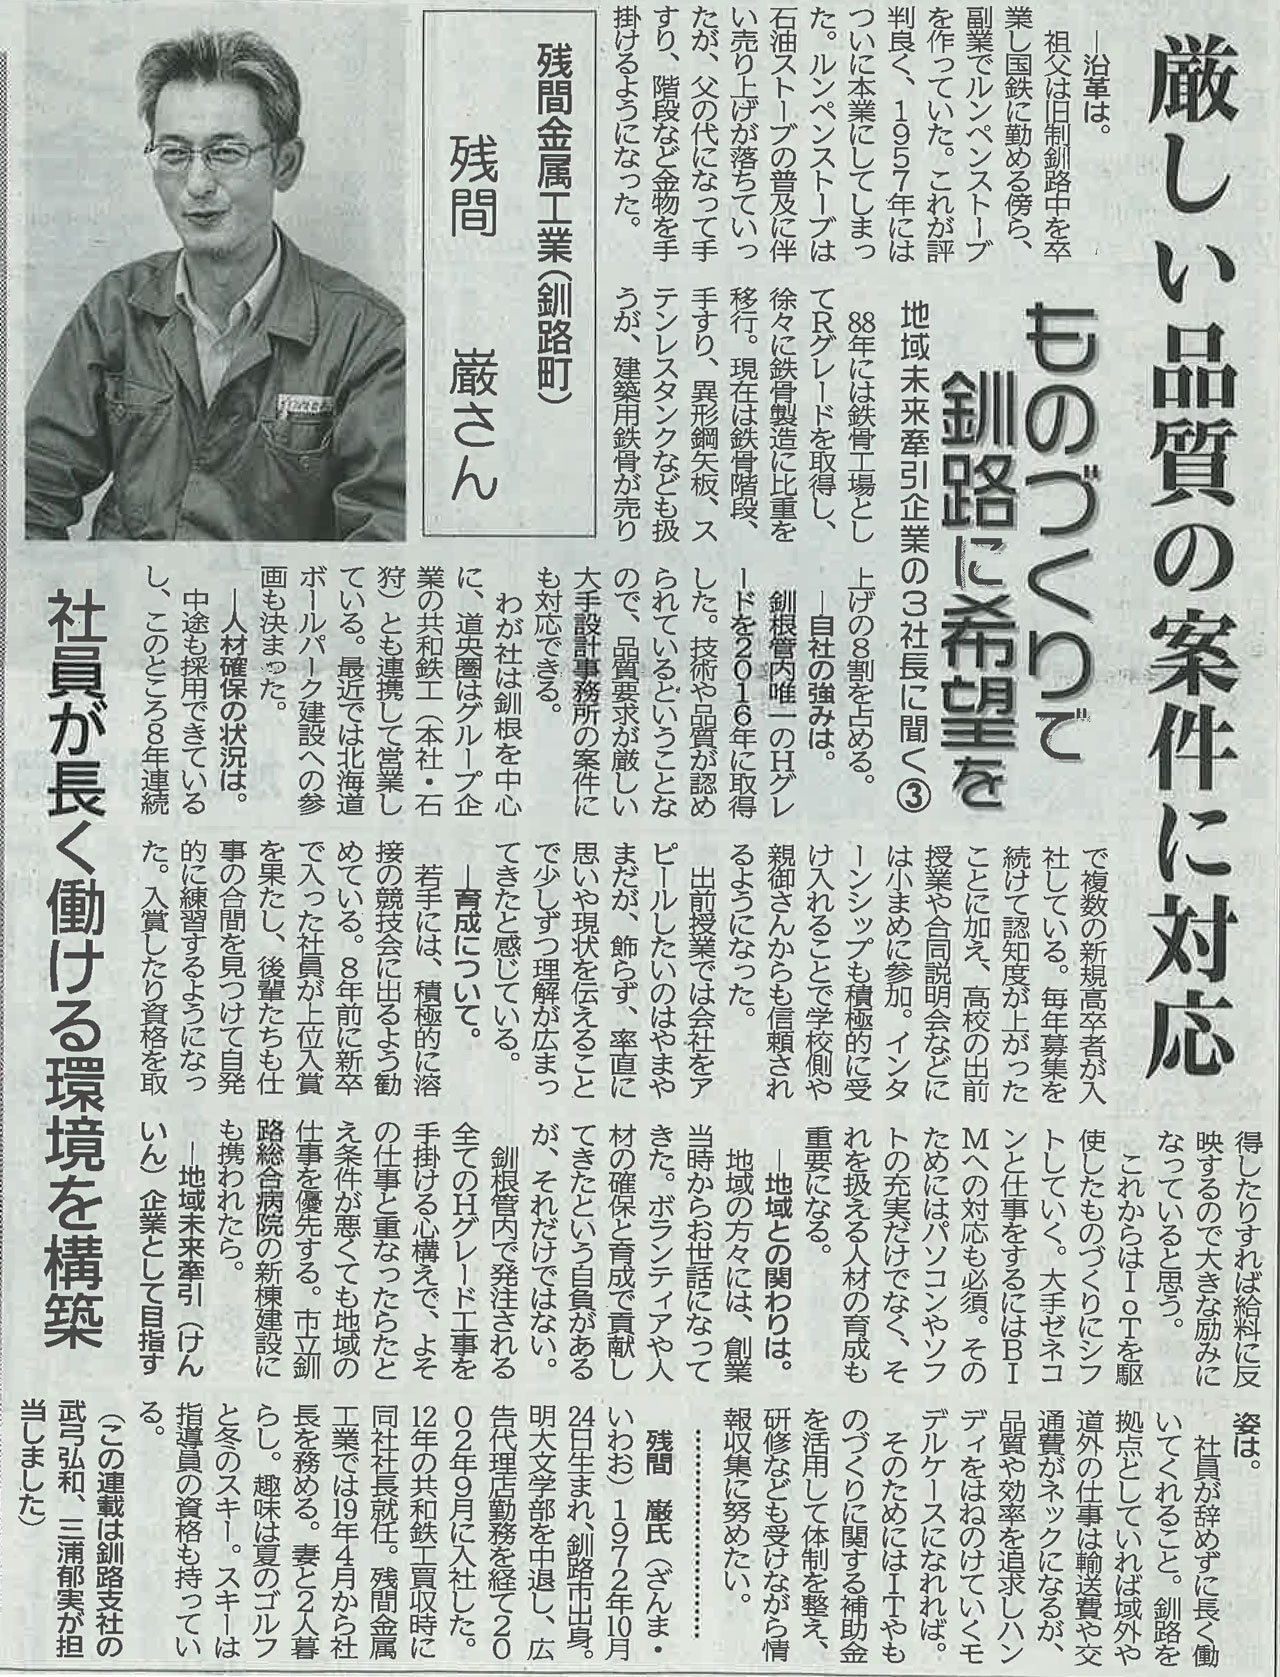 2020.12.23付 北海道建設新聞に当社社長記事が掲載されました。